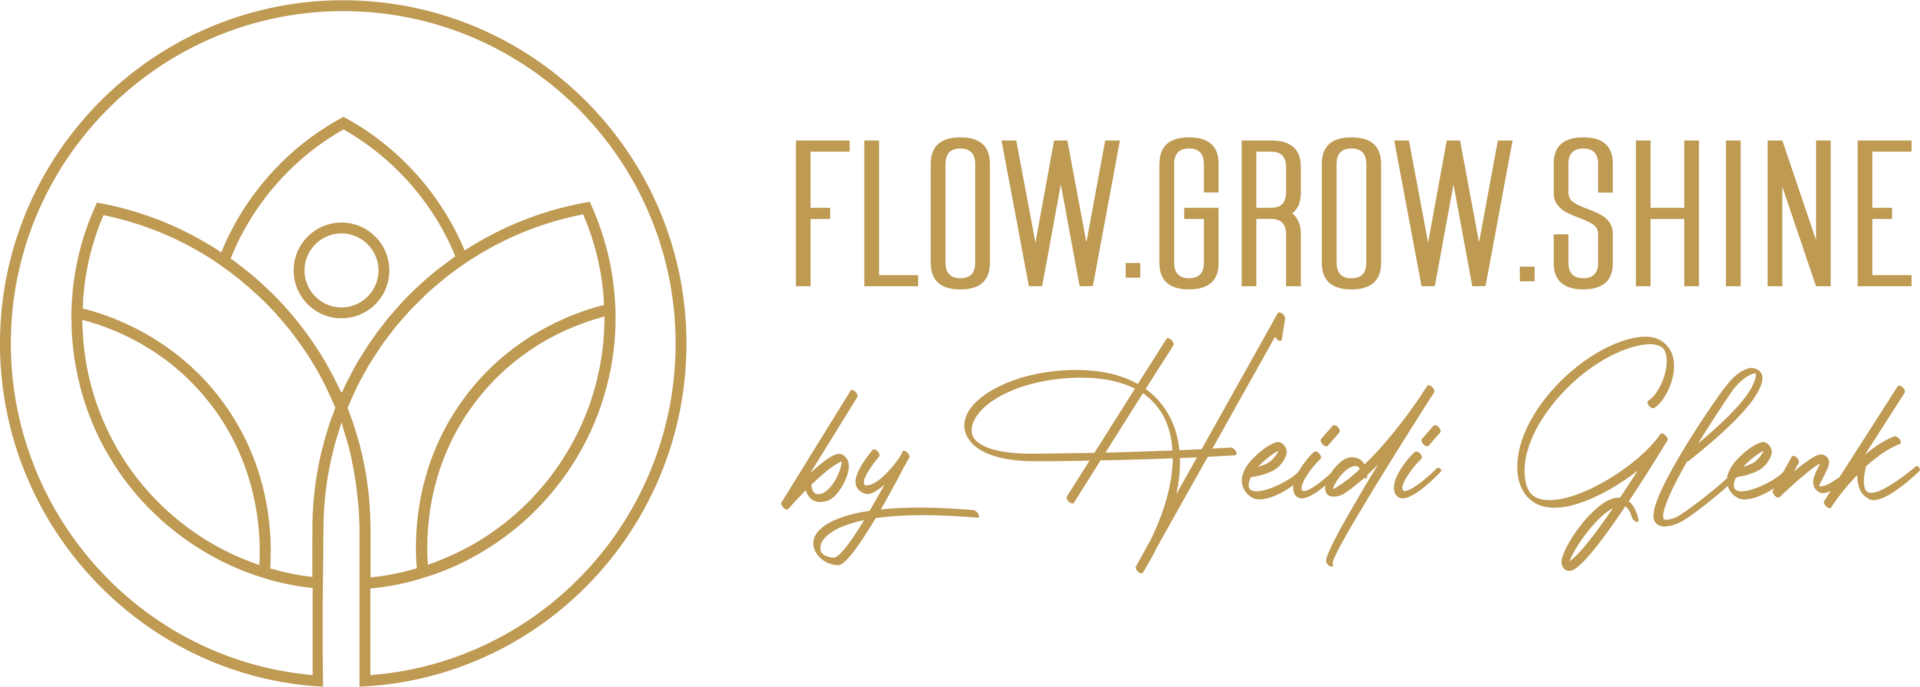 Flow.Grow.Shine by Heidi Glenk